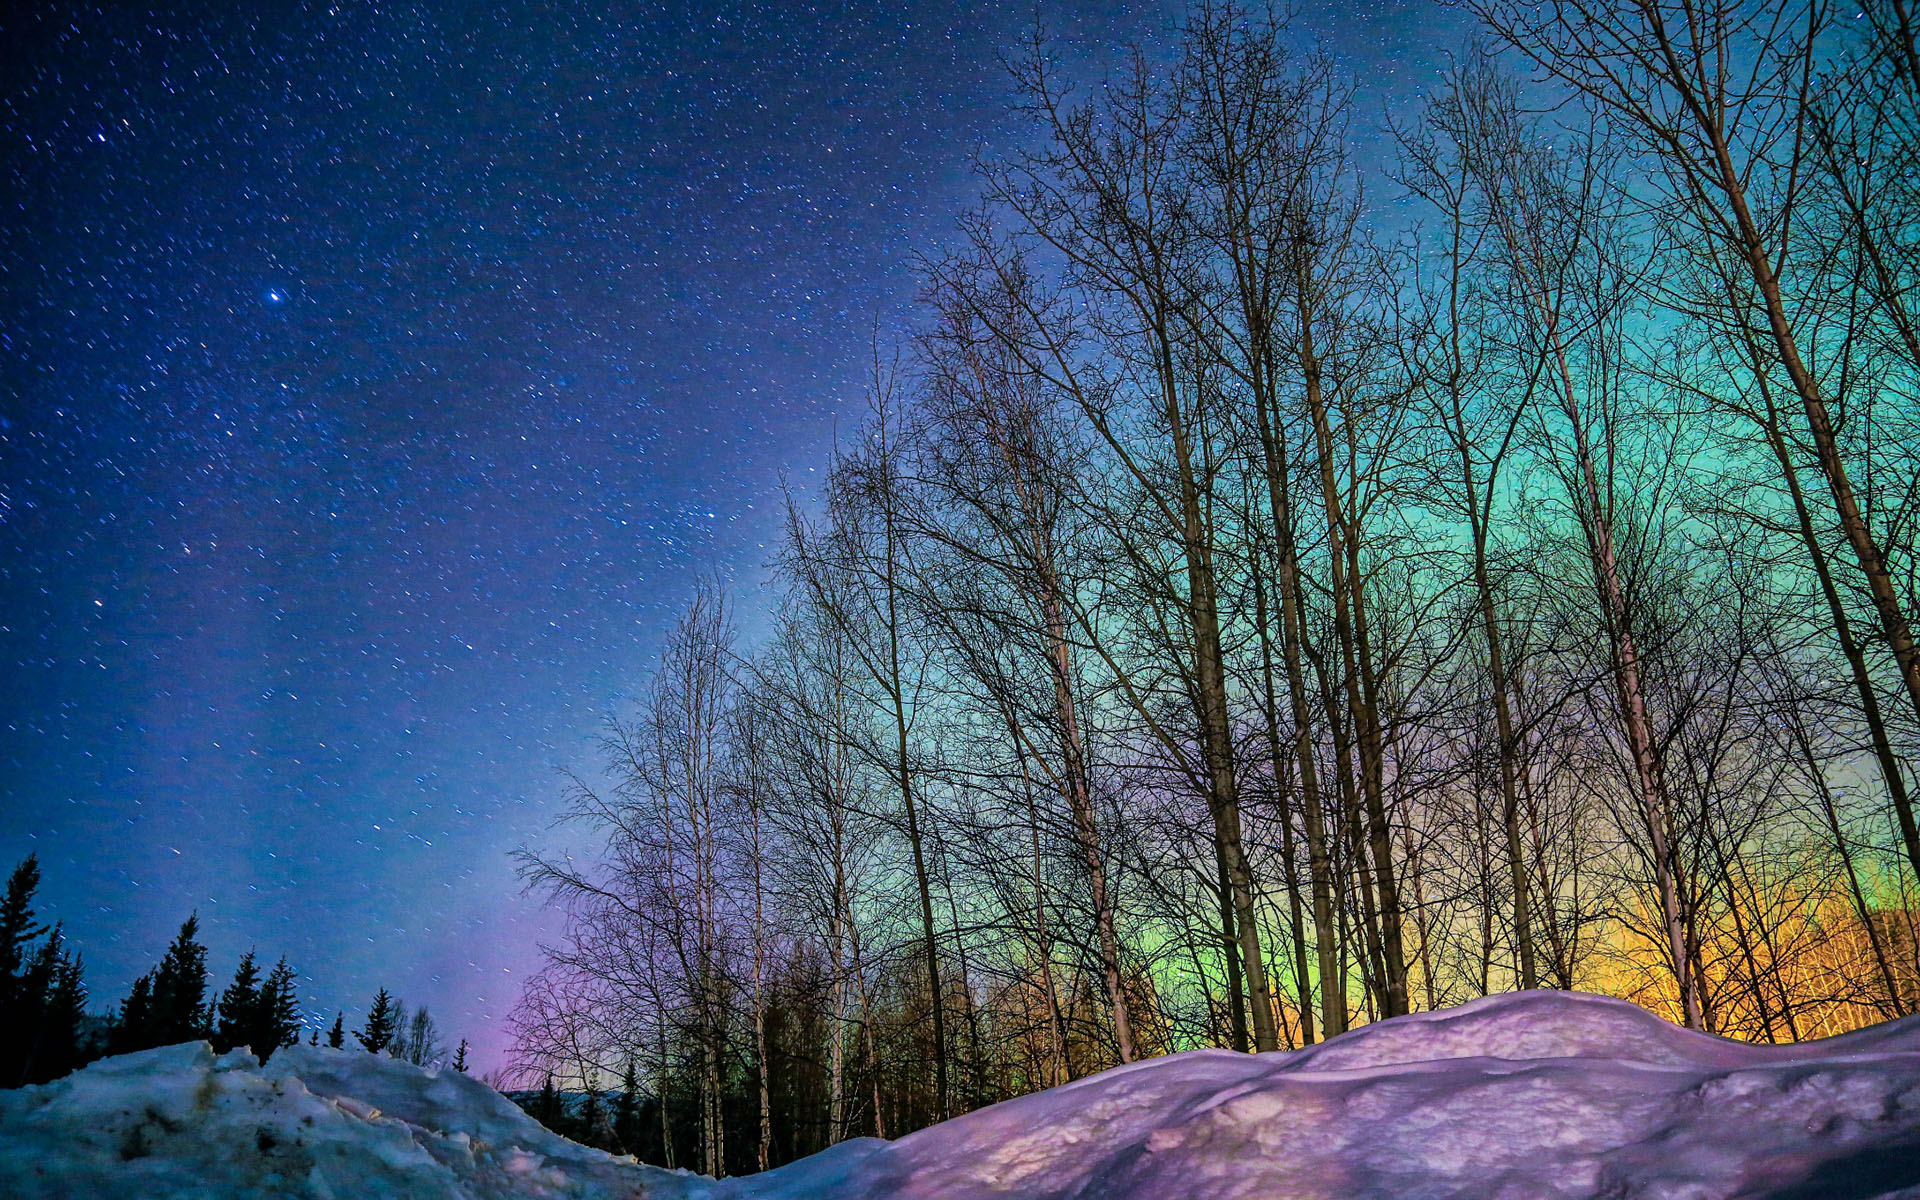 夜景图片唯美 阿拉斯加超美极光夜景图片